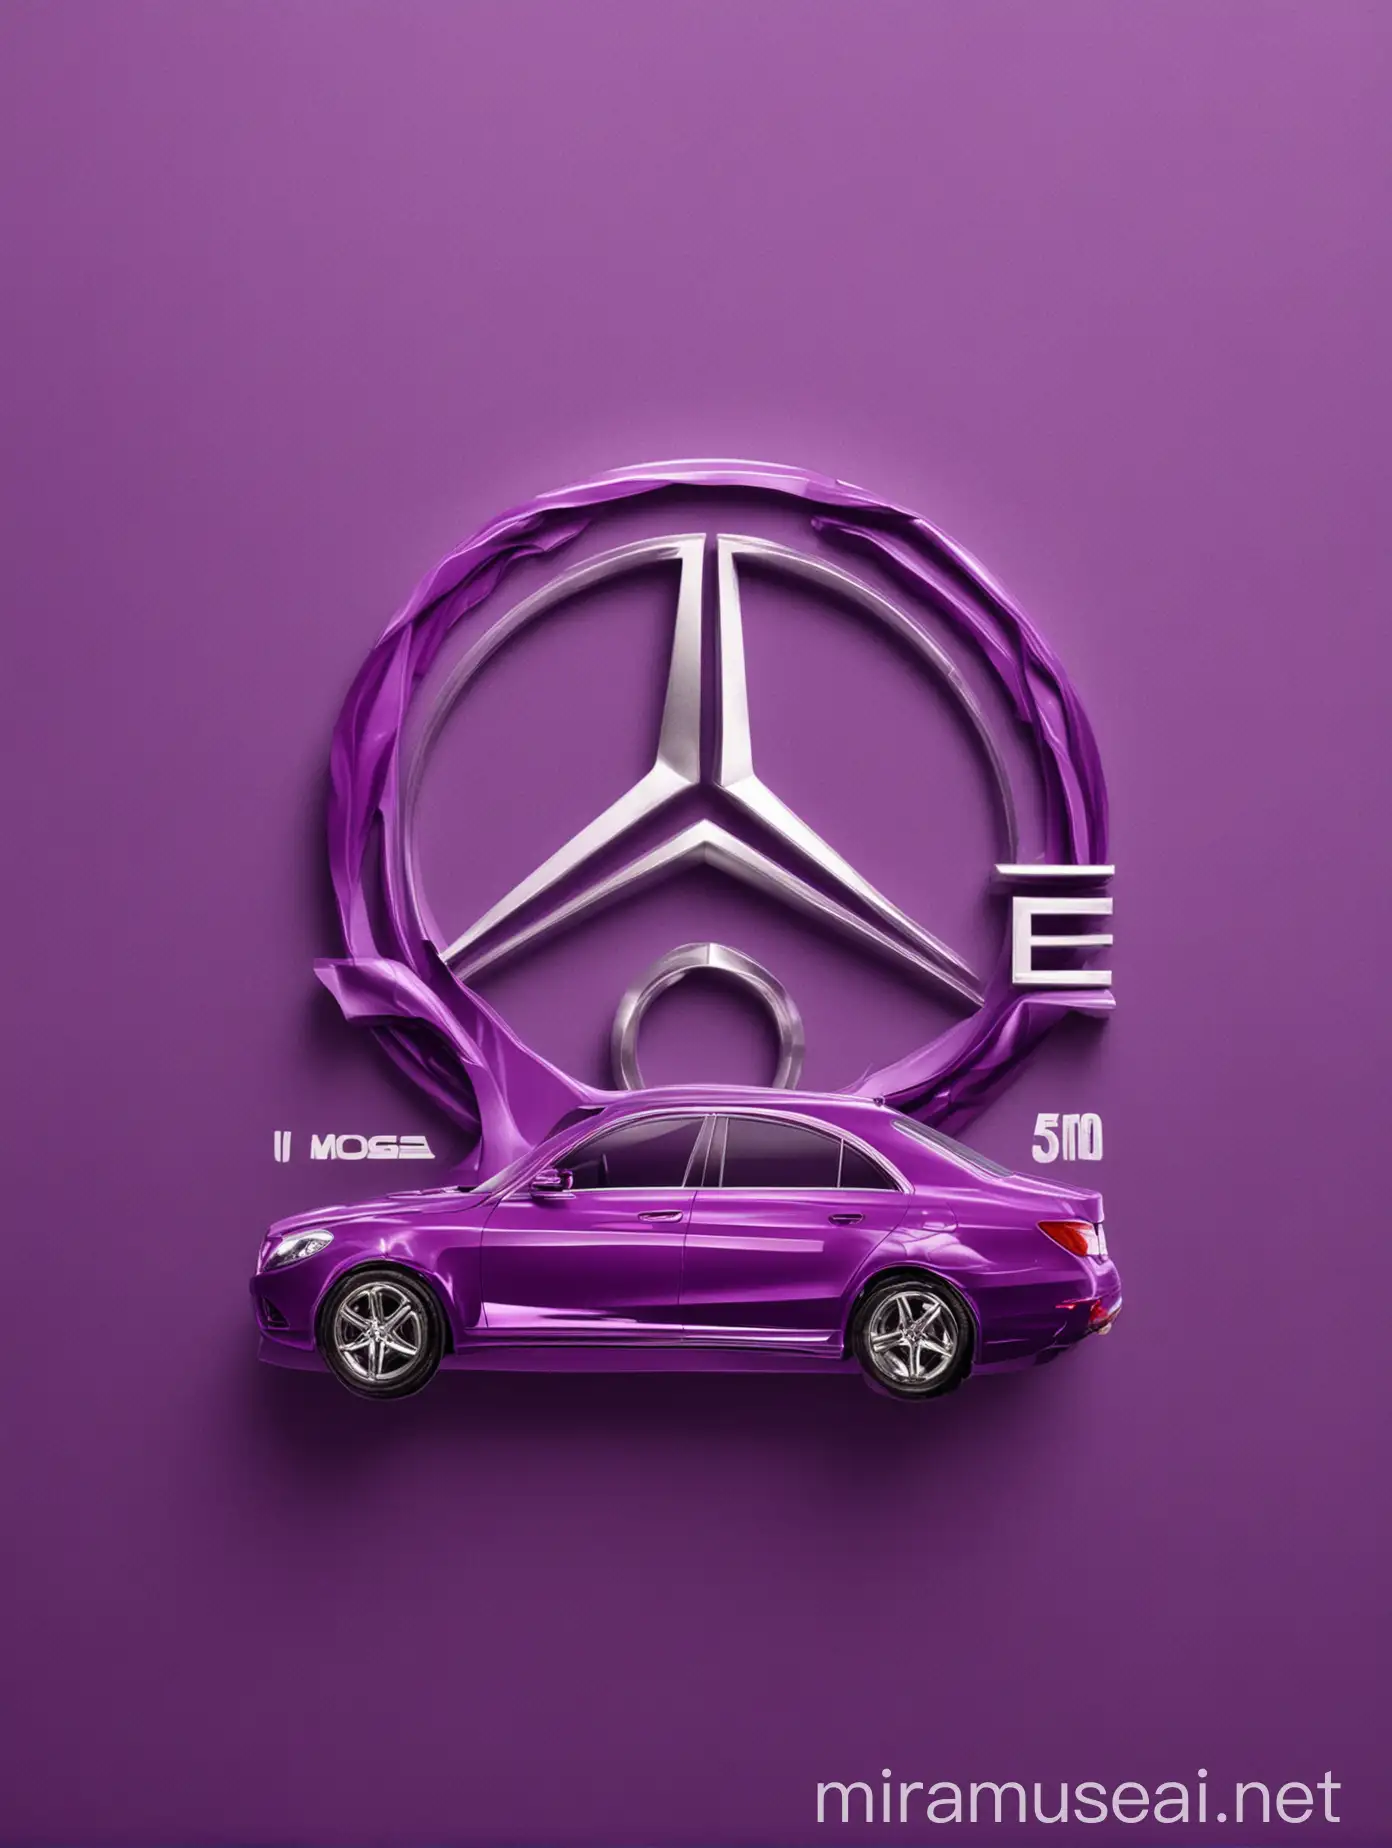 Mobila Luxury Mercedes Berline in Regal Purple